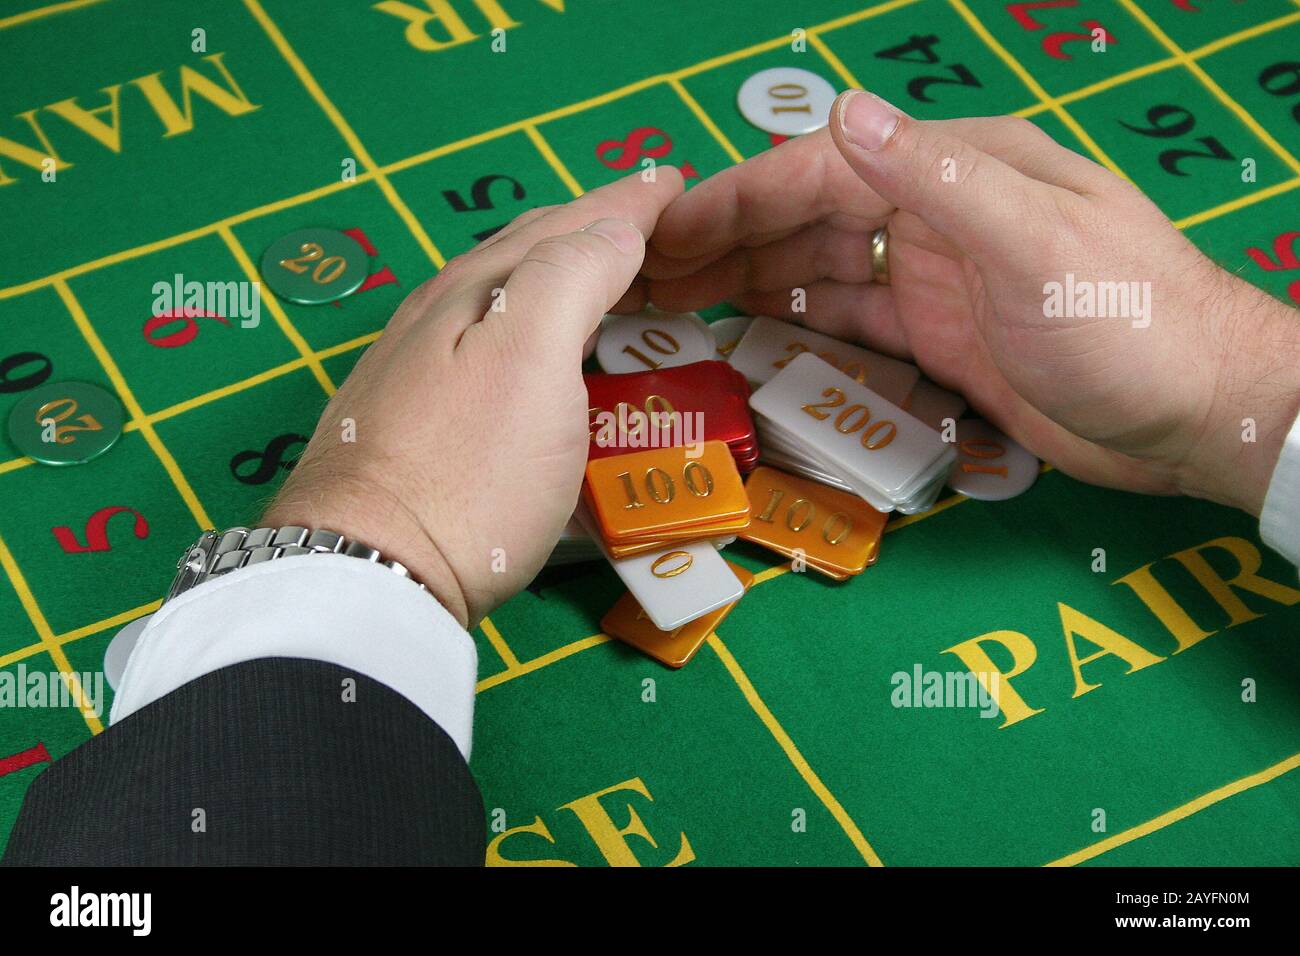 Am Roulettetisch, Spielbank, Gluecksspiel, Stock Photo